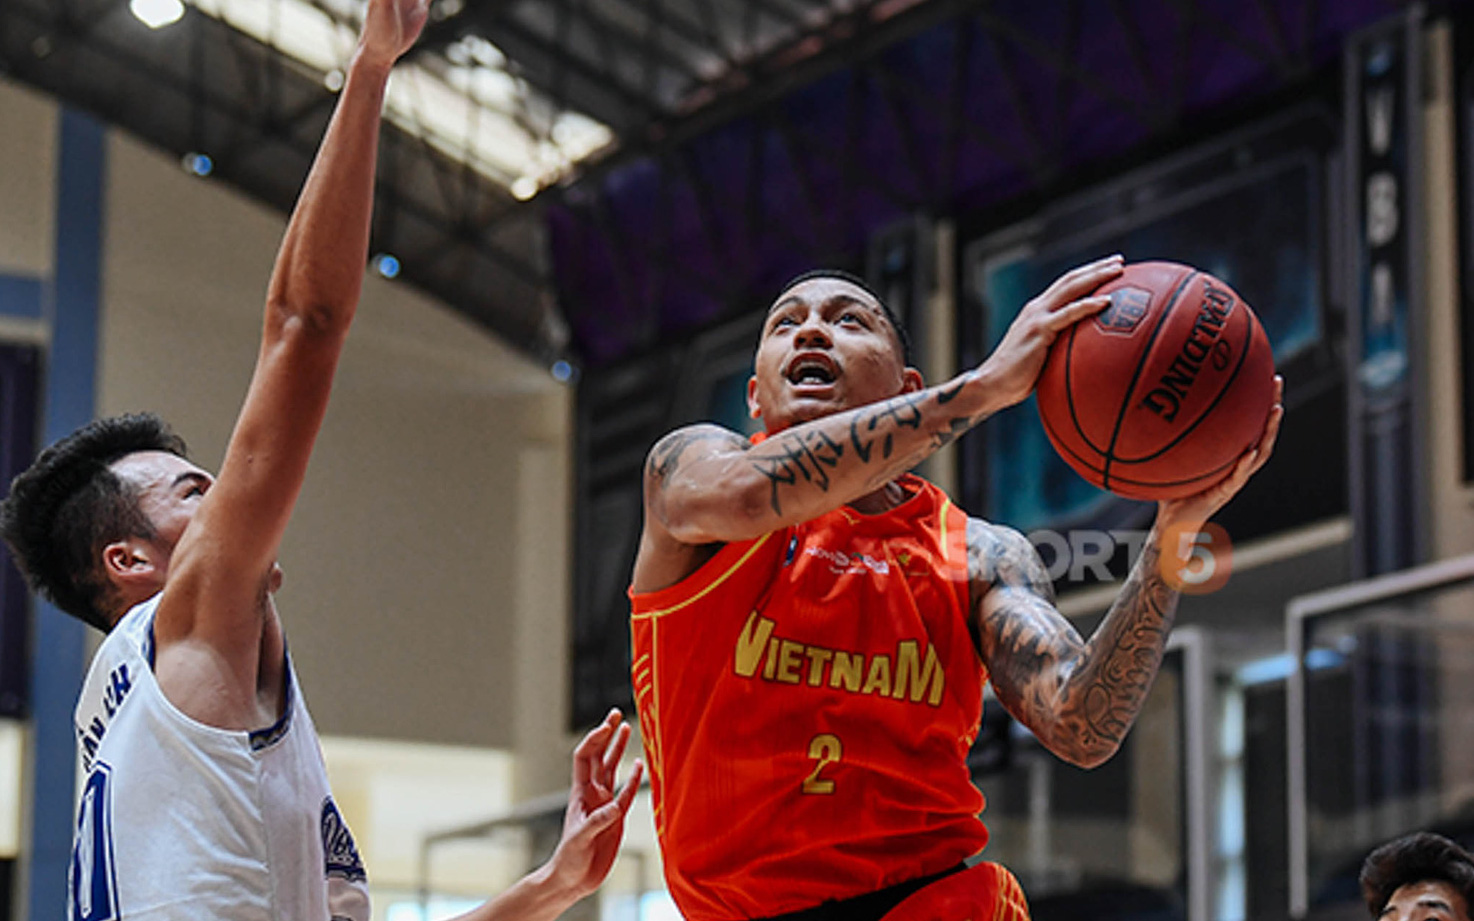 Vượt qua nỗi đau mất mát vì Covid-19, Richard Nguyễn giúp tuyển bóng rổ Quốc gia Việt Nam cắt chuỗi thua 3 trận liên tiếp